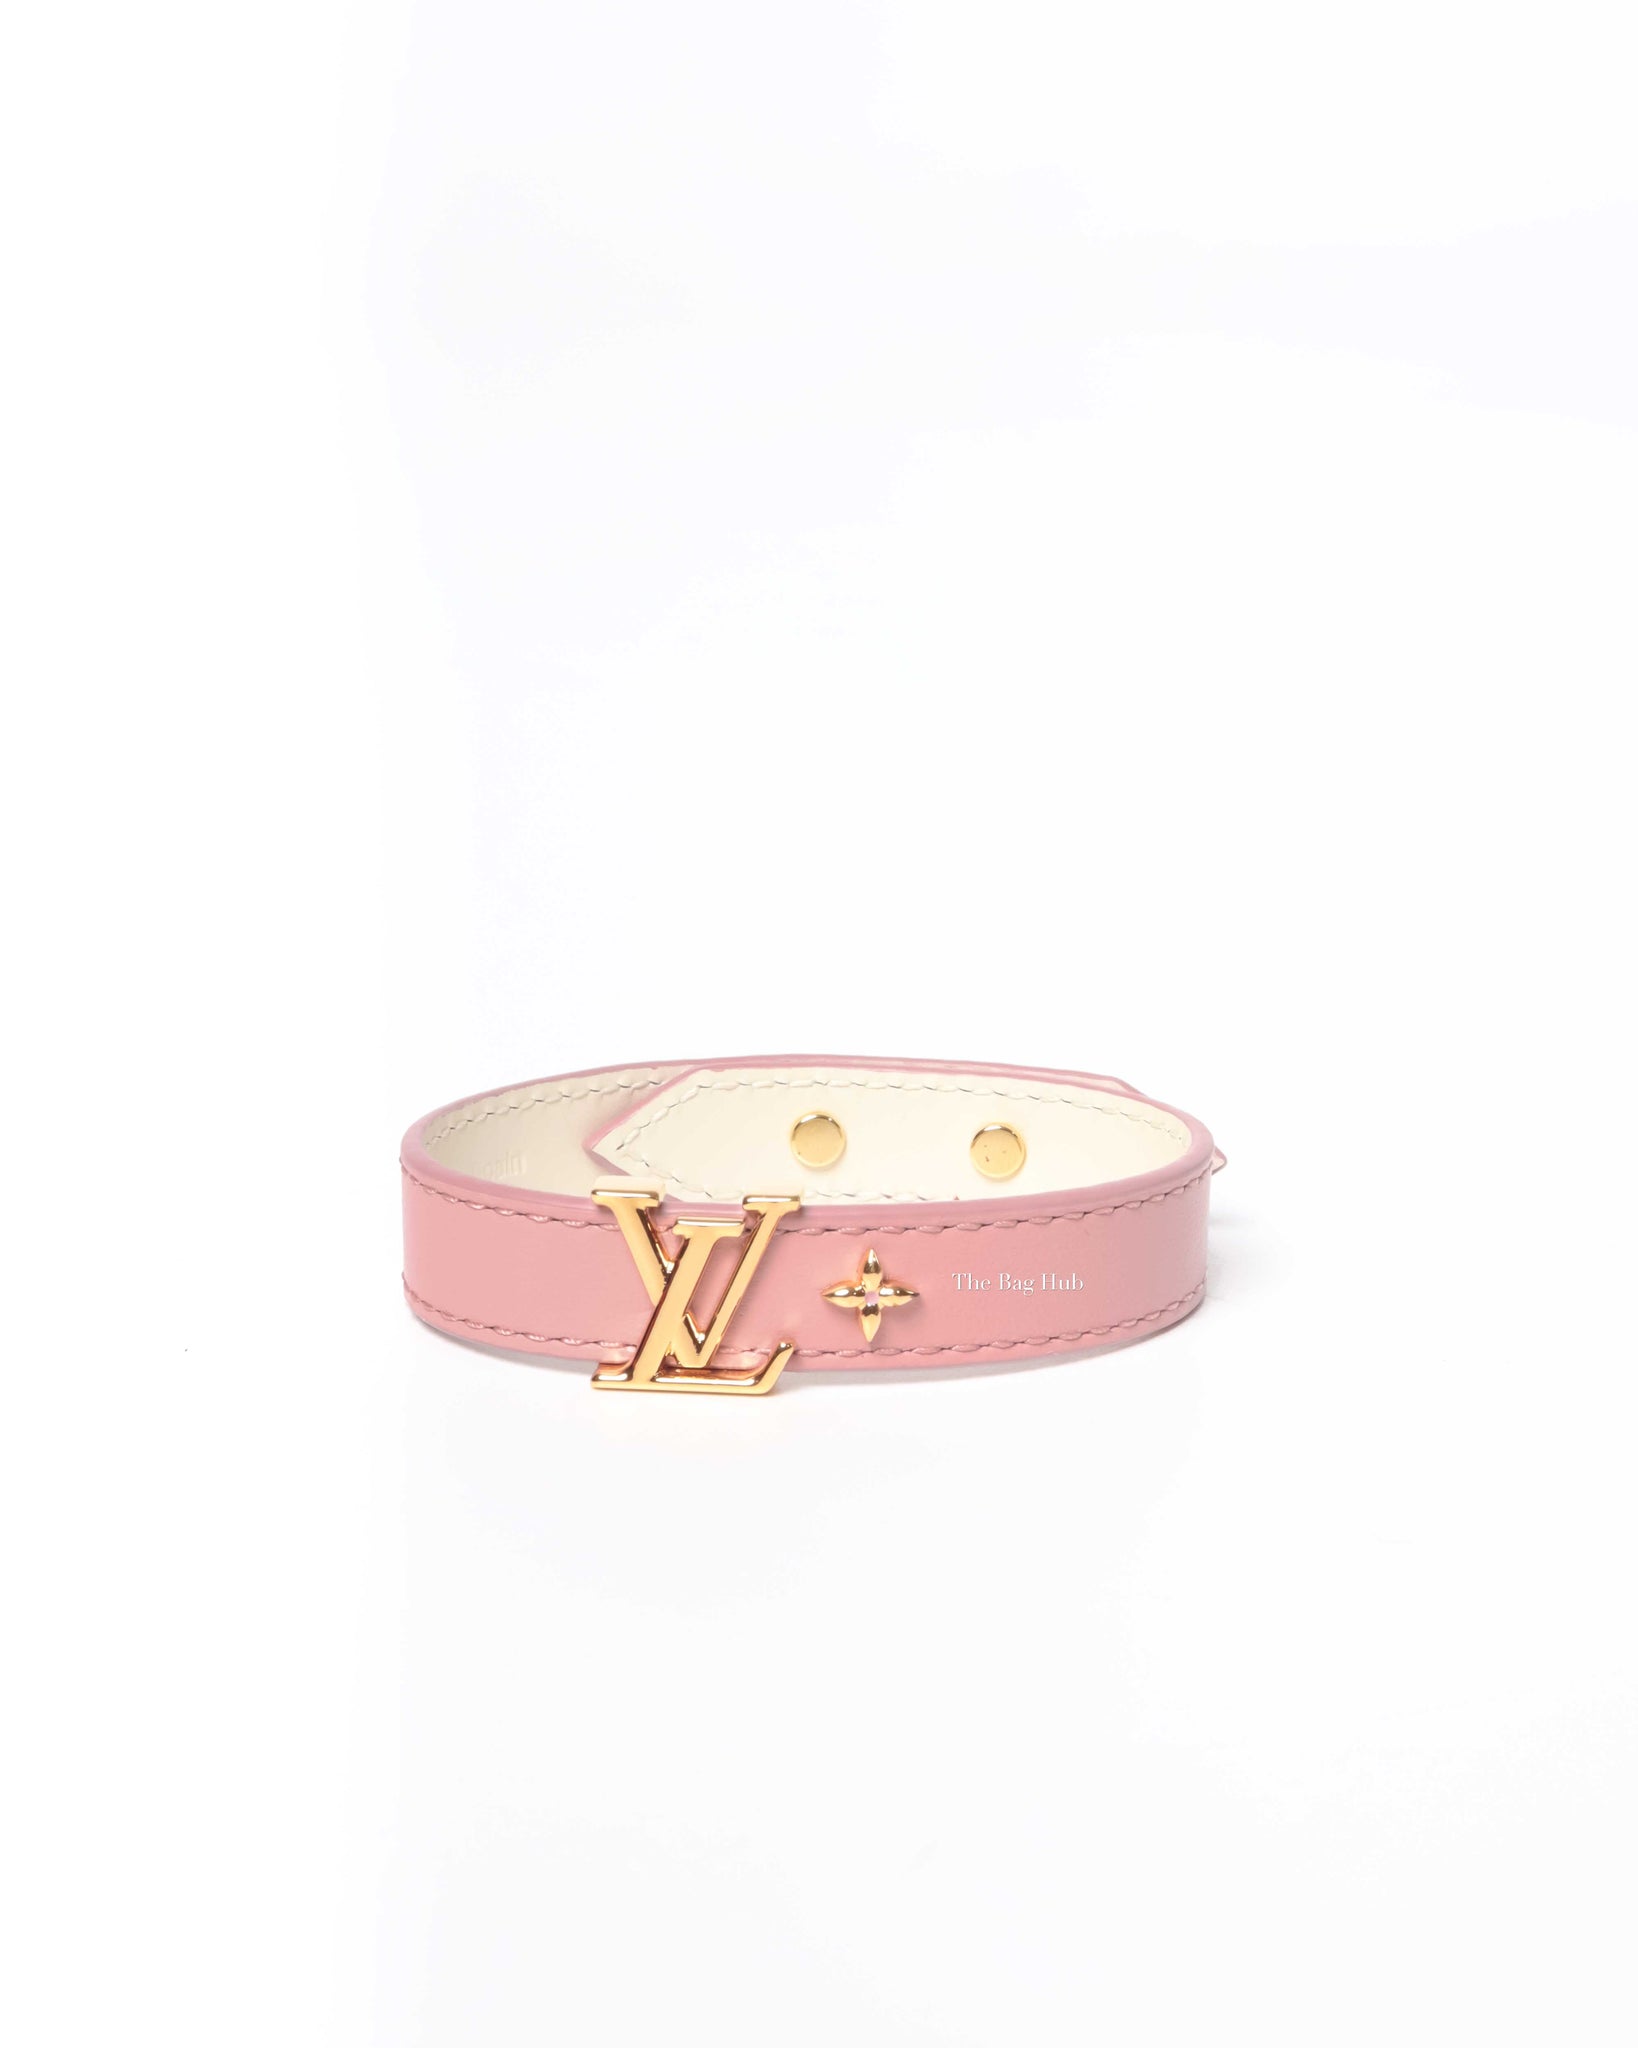 Louis Vuitton LV Iconic Bracelet Light Pink Calf. Size 17